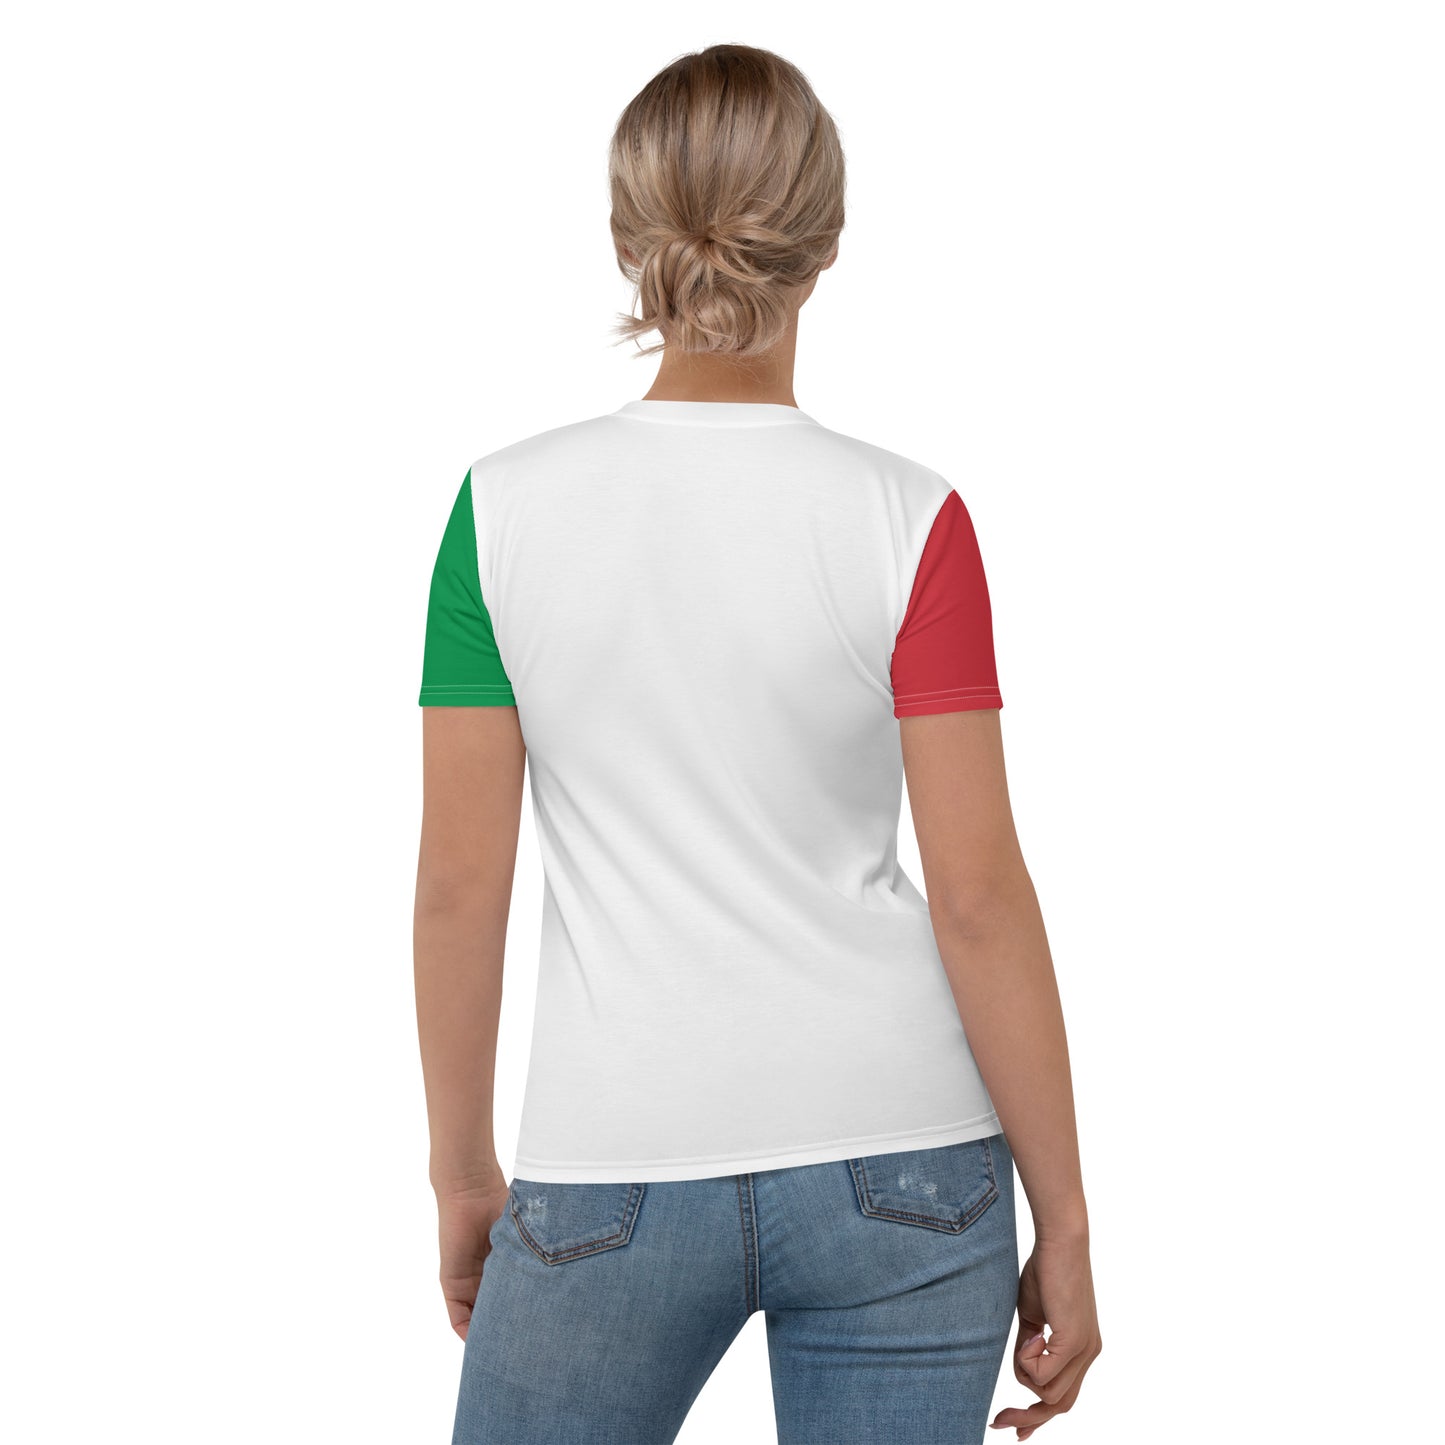 披萨爱好者礼物女式 T 恤送给意大利爱好者